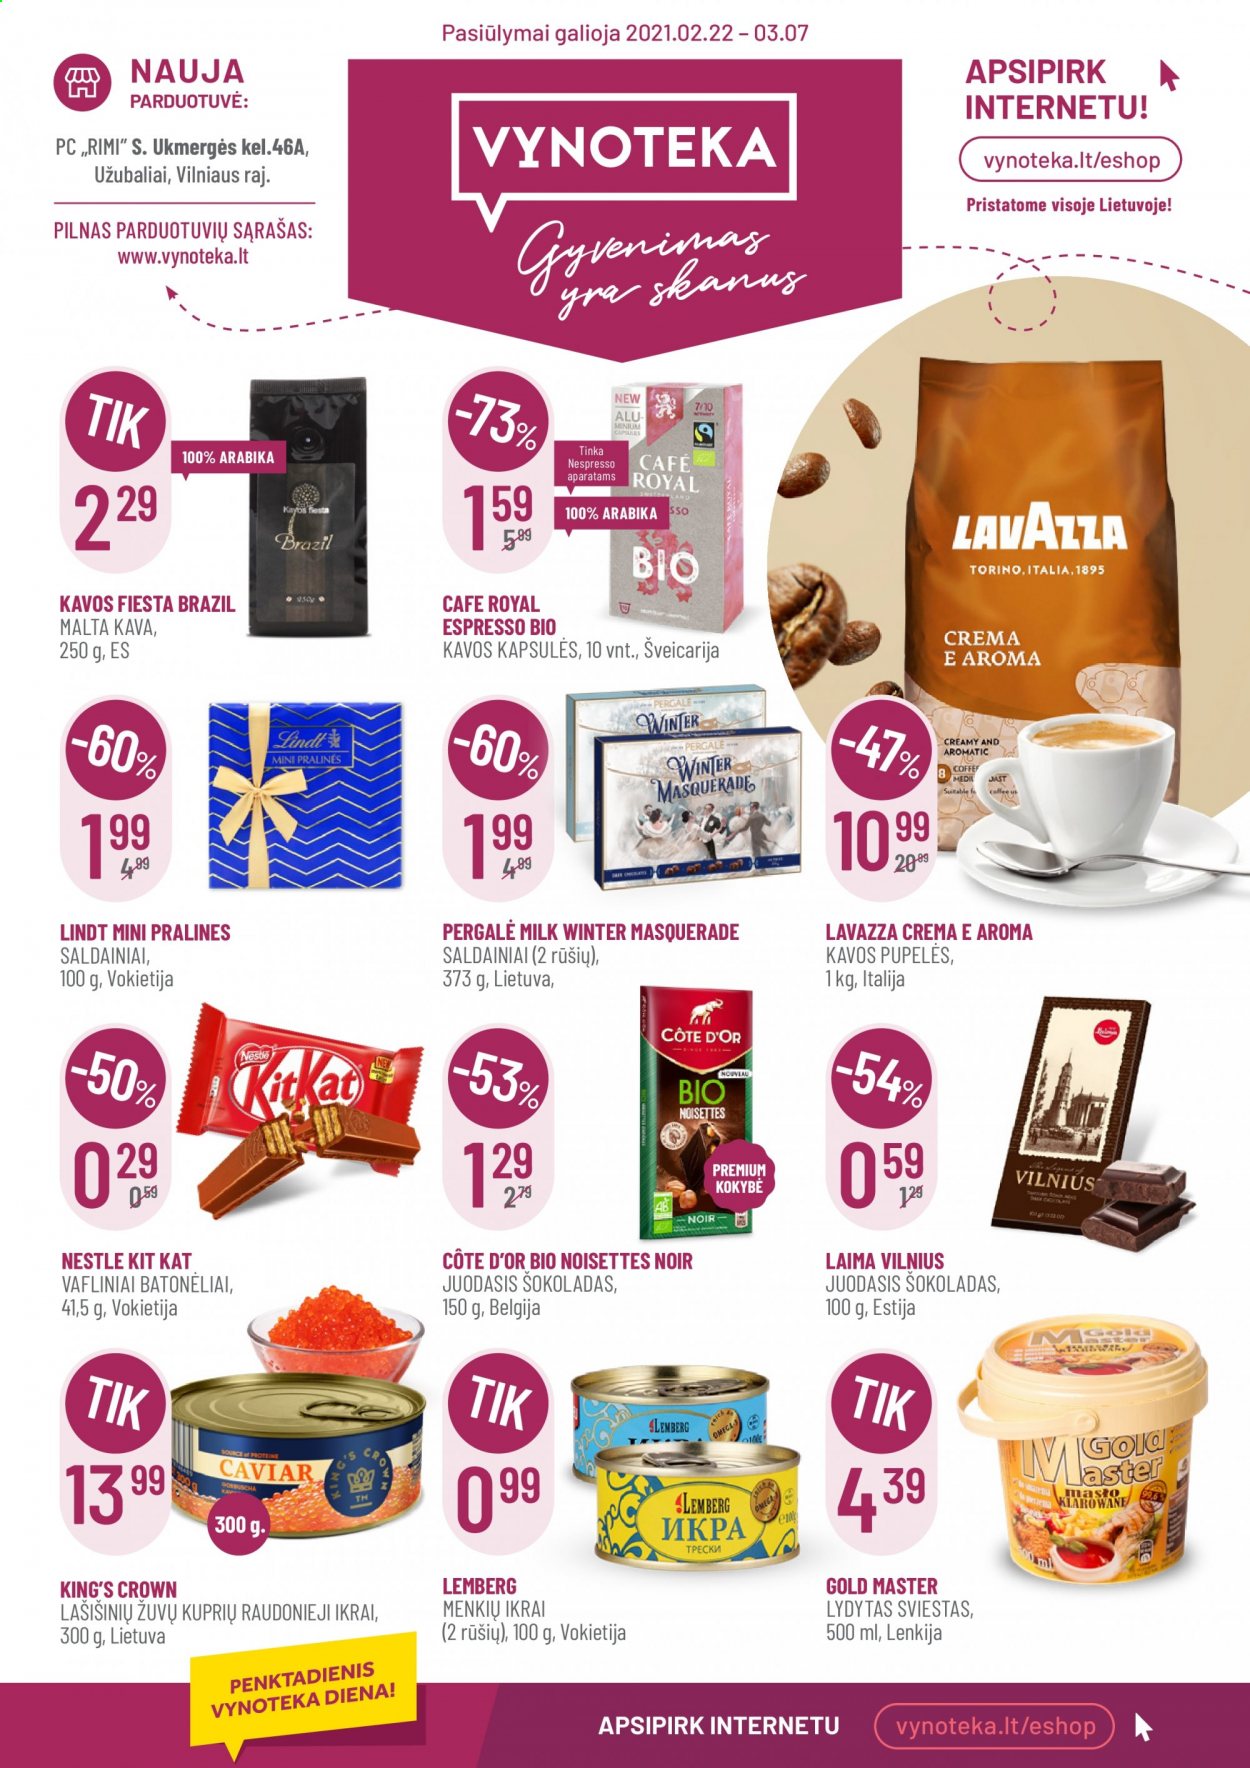 thumbnail - „Vynoteka“ leidinys - 2021 02 22 - 2021 03 07 - Išpardavimų produktai - sviestas, Nestlé, saldainiai, šokoladas, Lavazza, malta kava, juodasis šokoladas, kava, kavos pupelės. 1 puslapis.